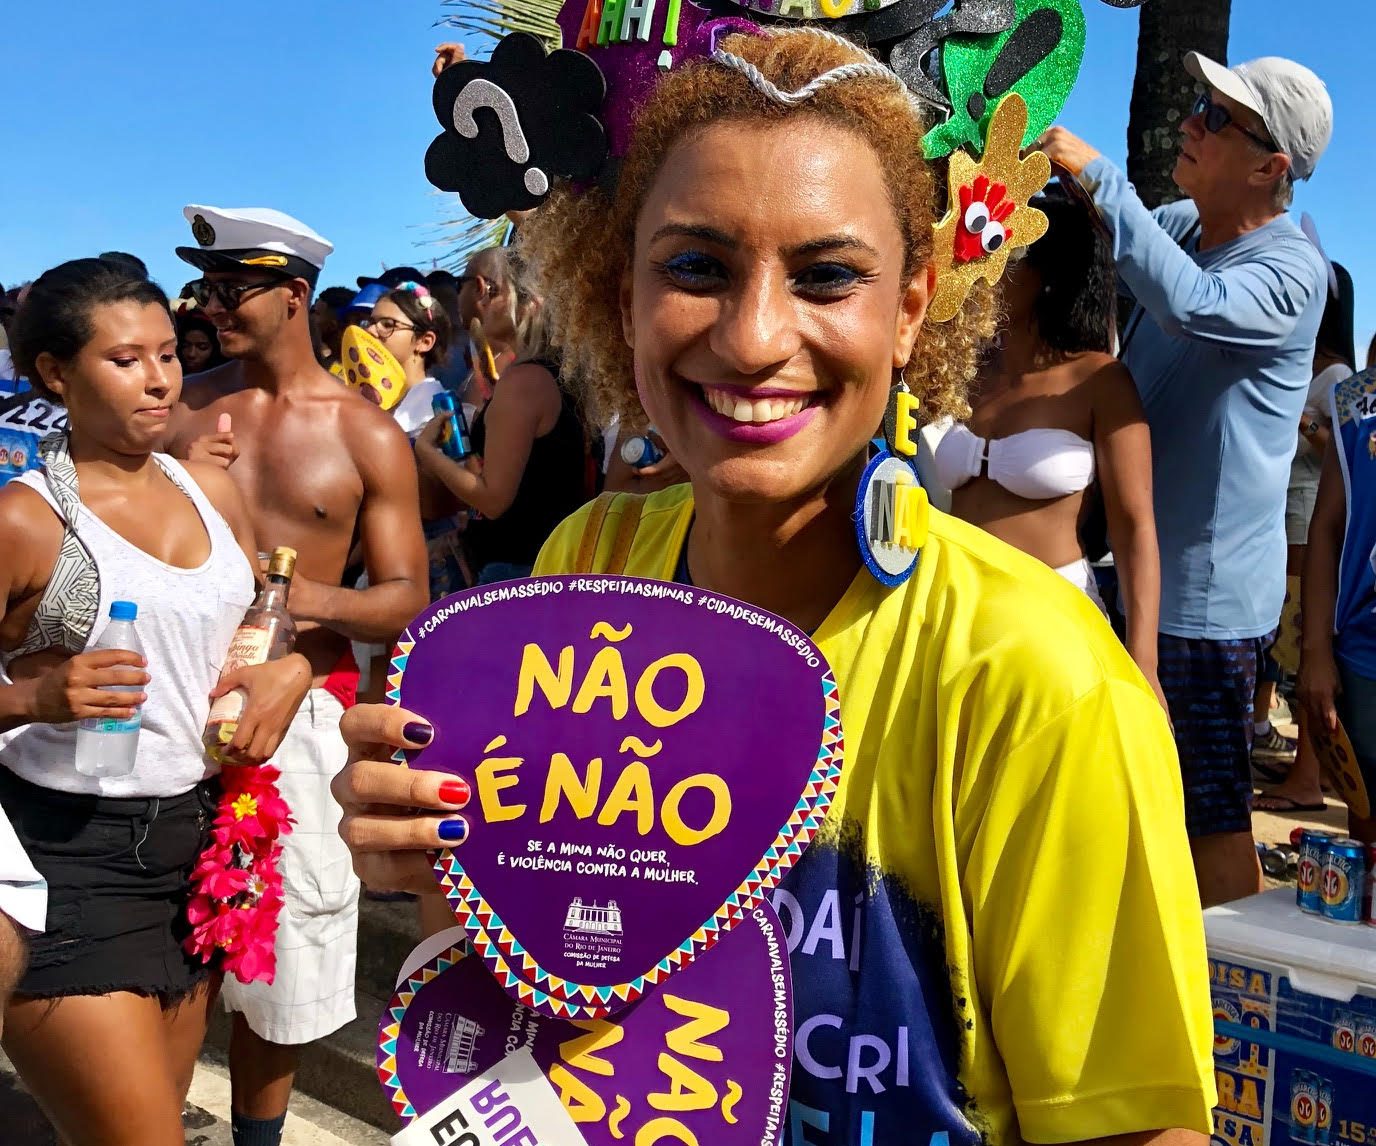 Marielle Franco no carnaval de 2018 em campanha contra assédio às mulheres: defensora dos direitos humanos e da população mais vulnerável (Foto: Carla Lencastre)